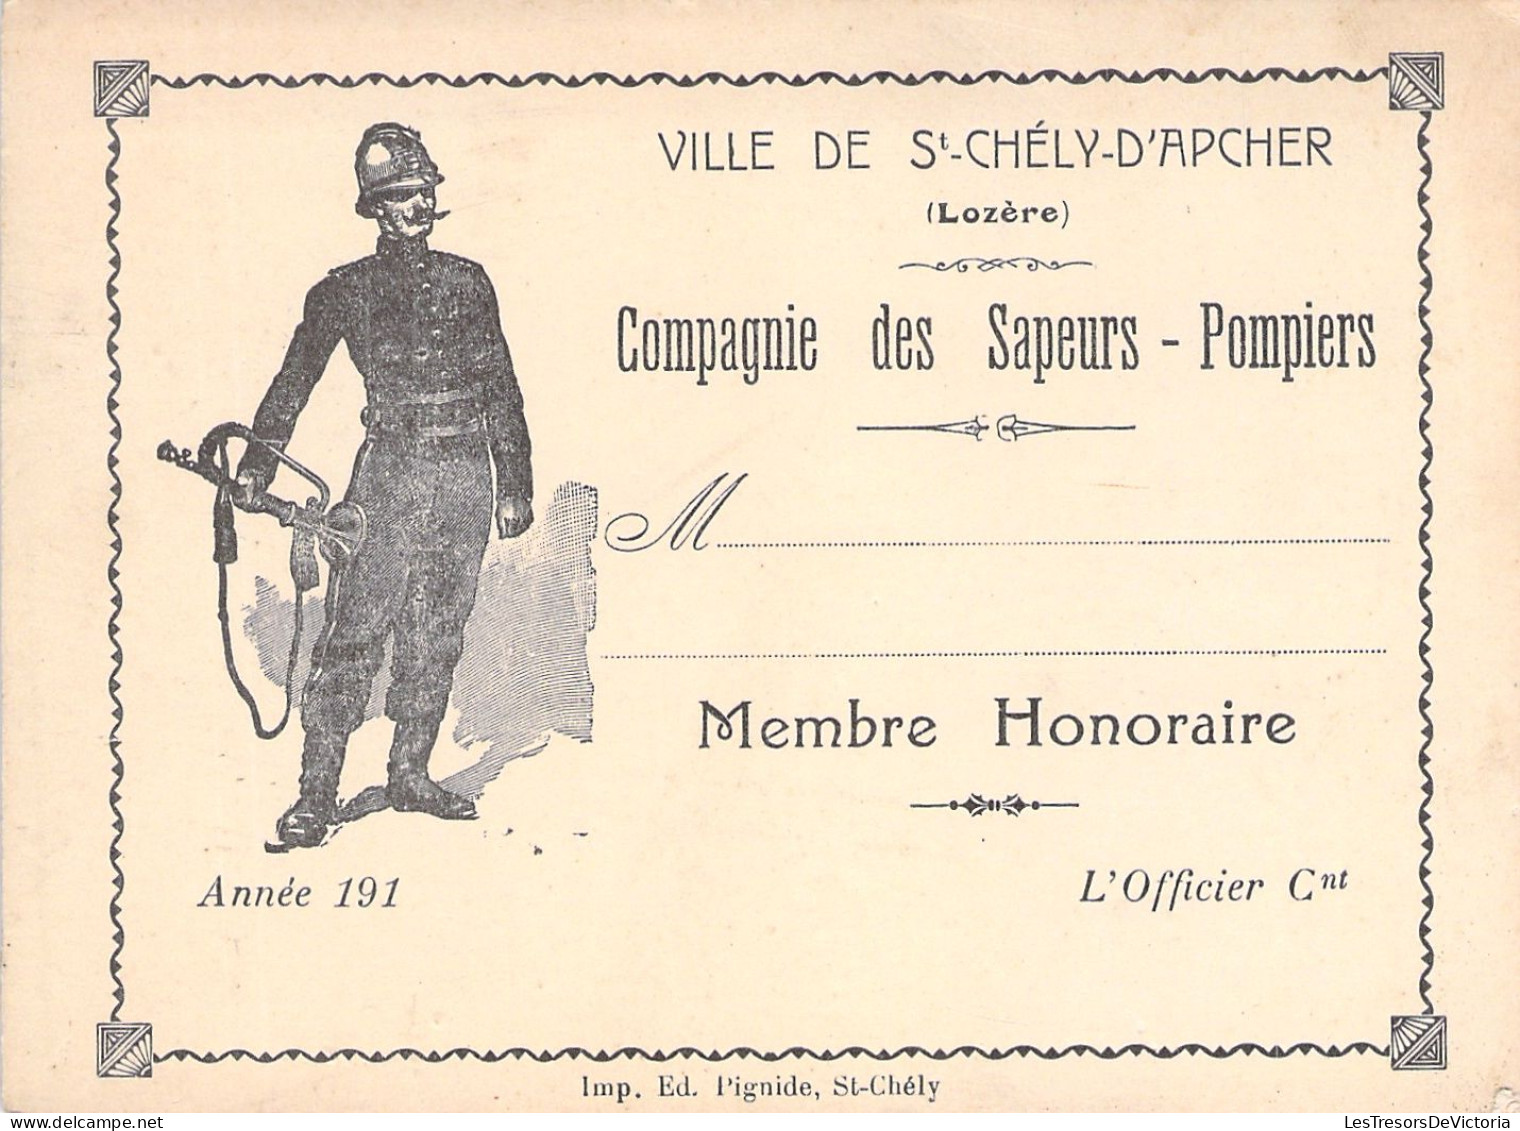 Ville De St Chely D'apcher - Lozere - Compagnie Des Sapeurs Pompiers - Membre Honoraire - Carte De Membre - 12x9cm - Tessere Associative